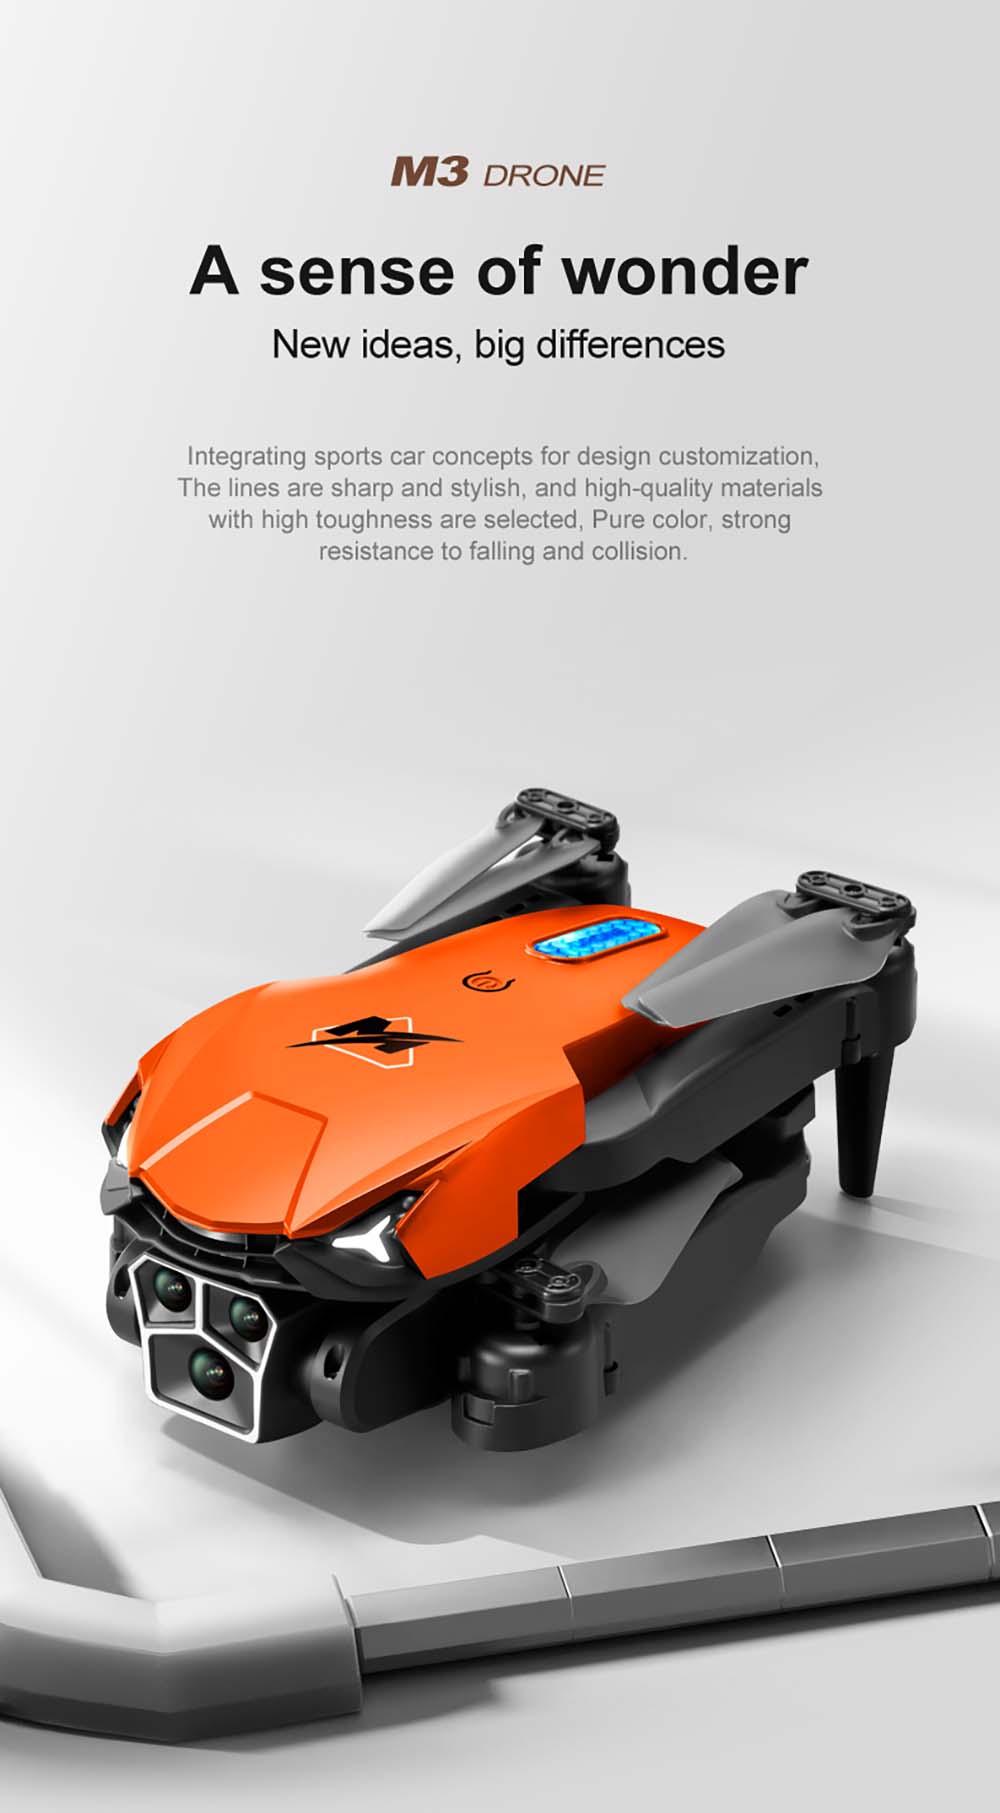 WLRC M3 Three Camera RC Drone Review: Banggood Sales at $25.99